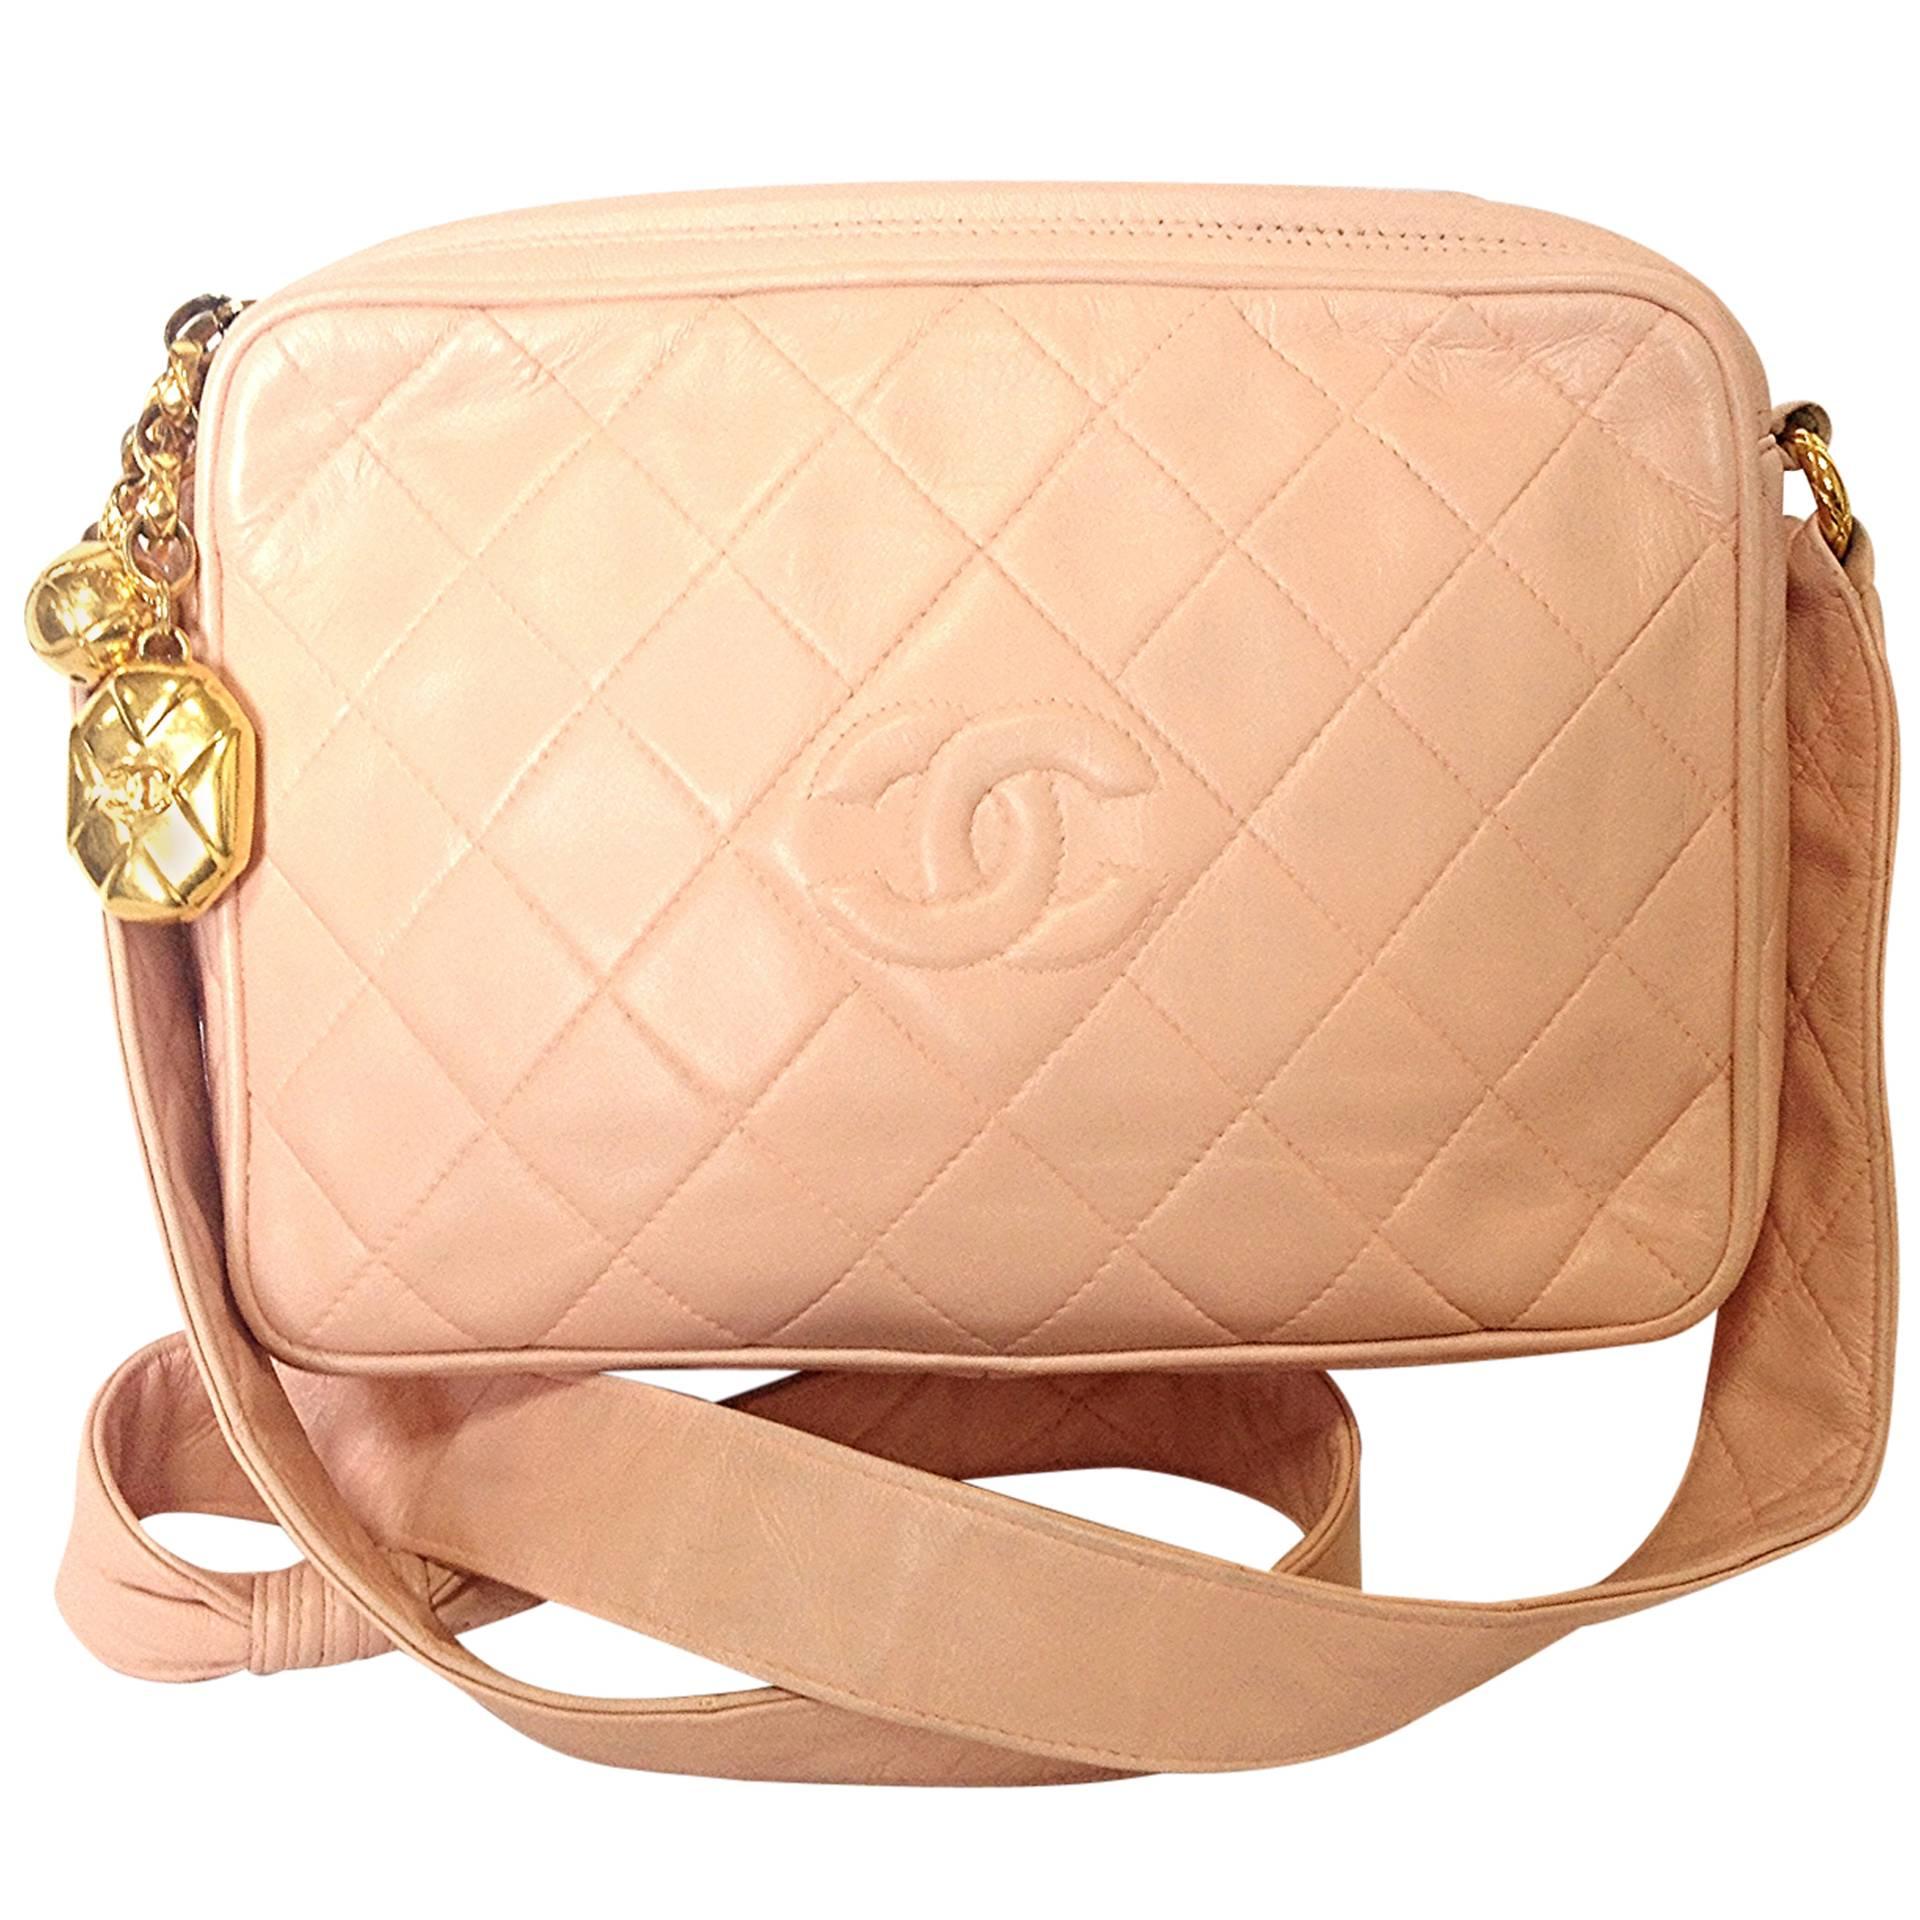 Vintage CHANEL milky pink lambskin camera bag style shoulder bag with golden CC For Sale